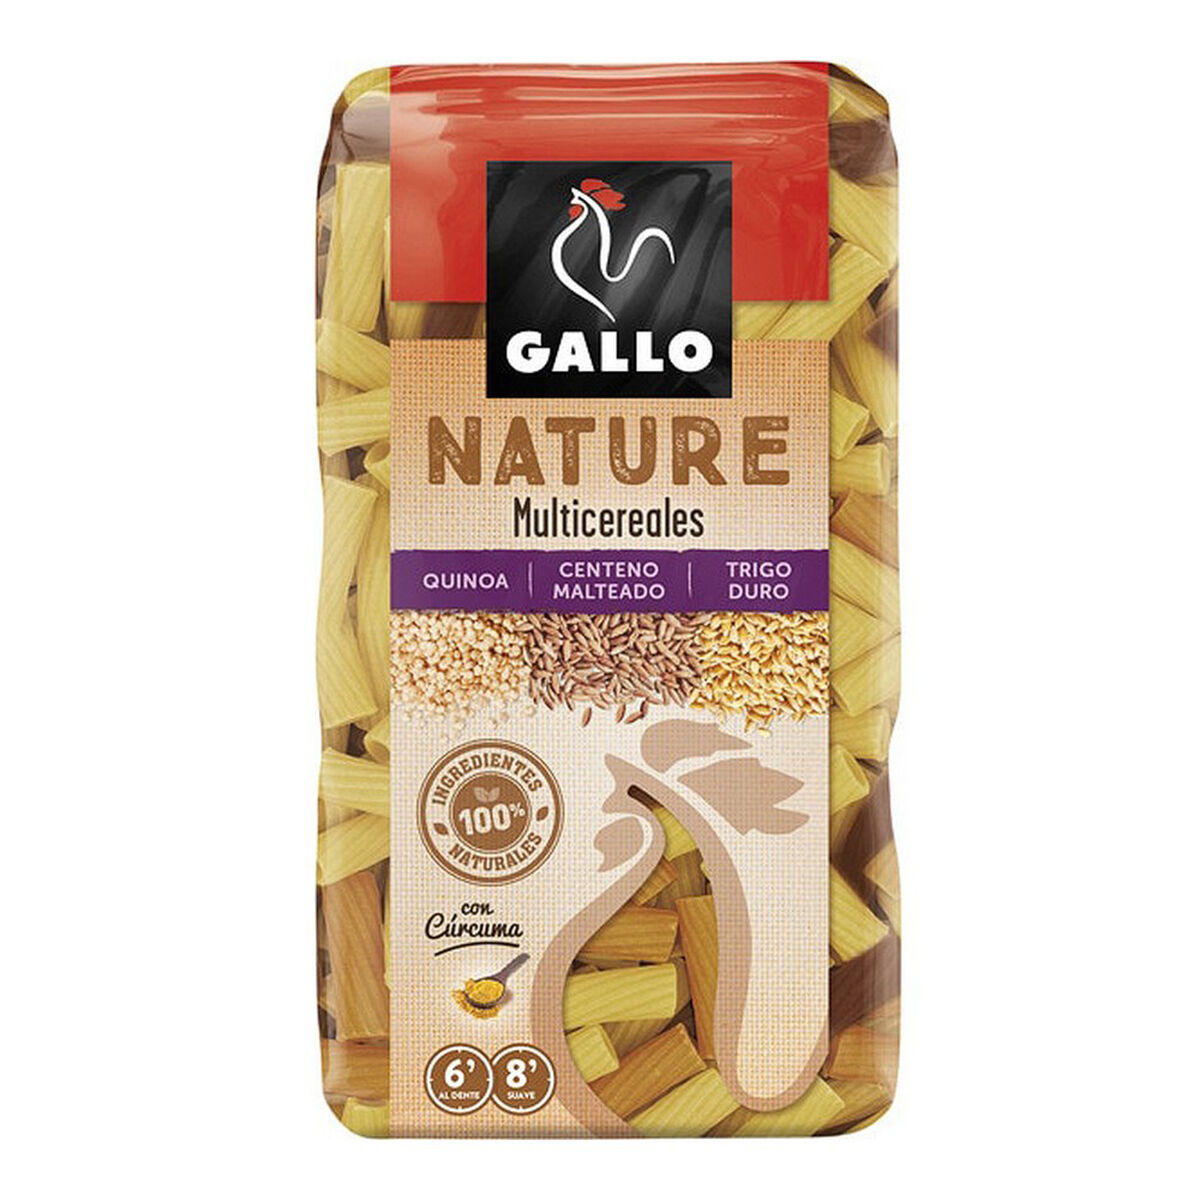 Maccheroni Gallo Nature Cereali (400 g)